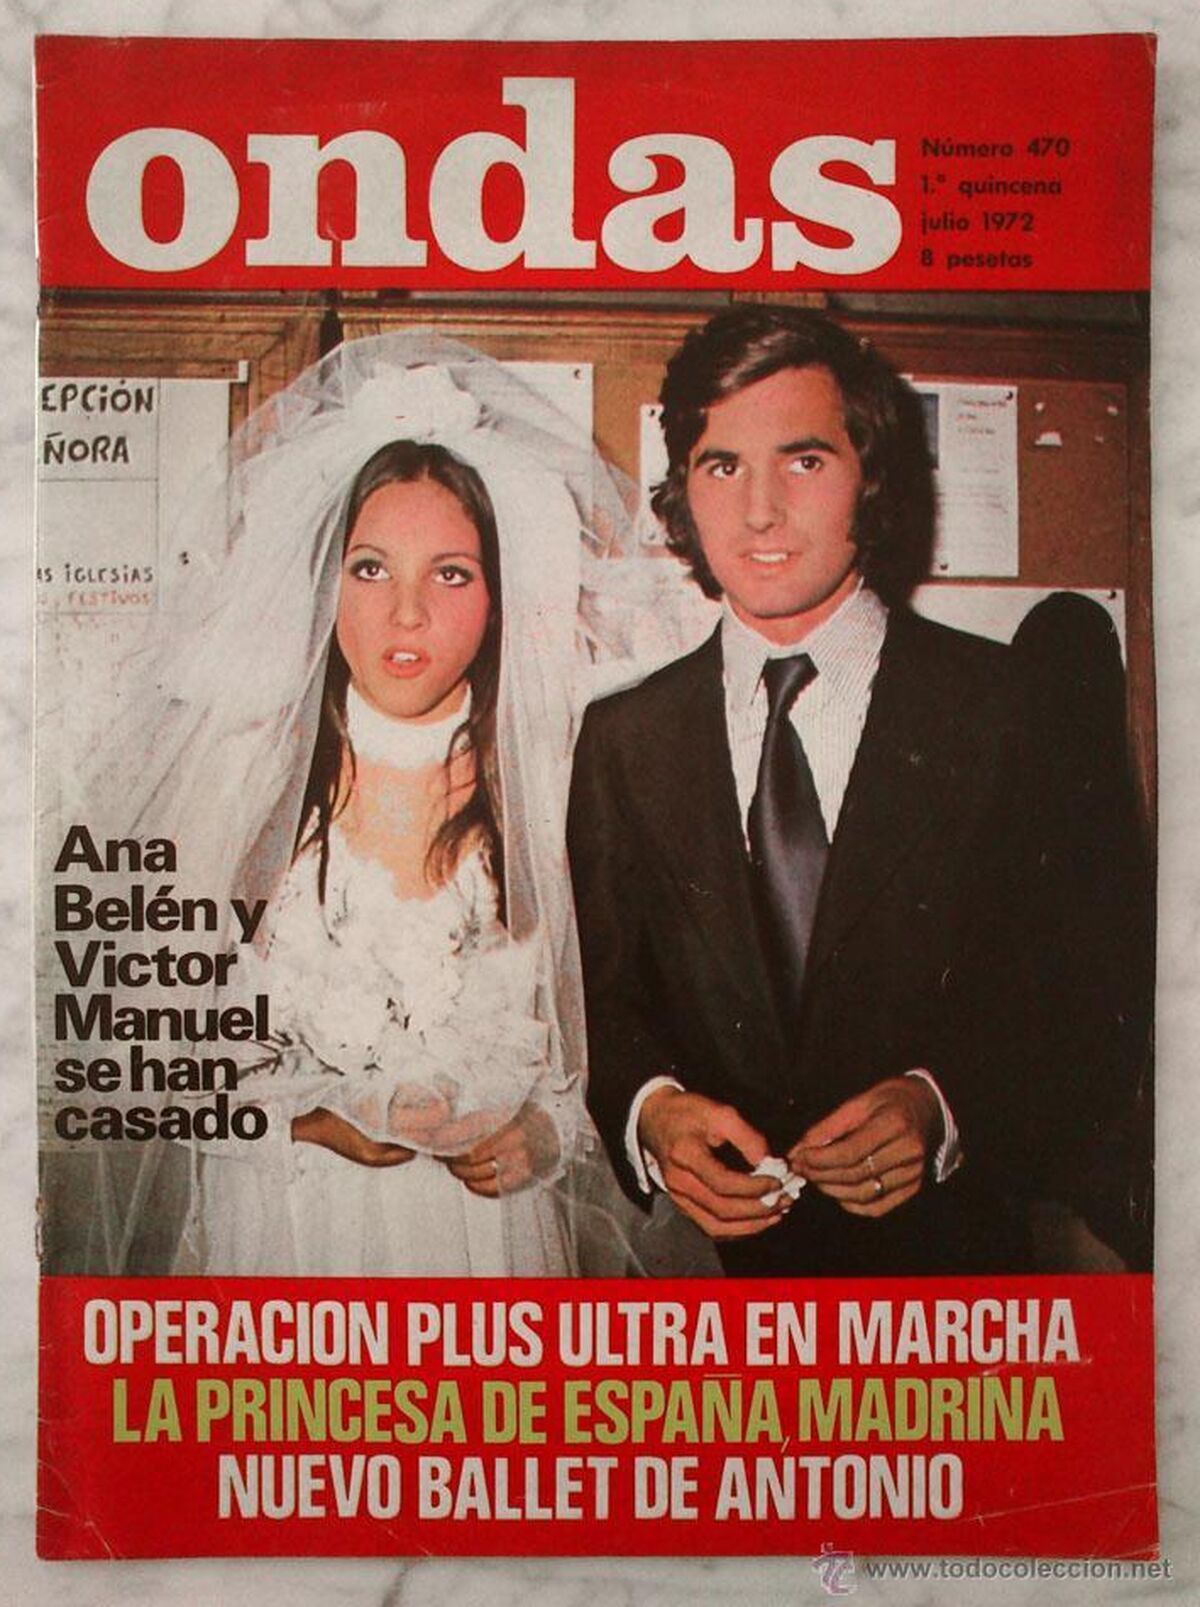 Couverture d'un magazine de l'époque avec des images du mariage d'Ana Belén et Victor Manuel.